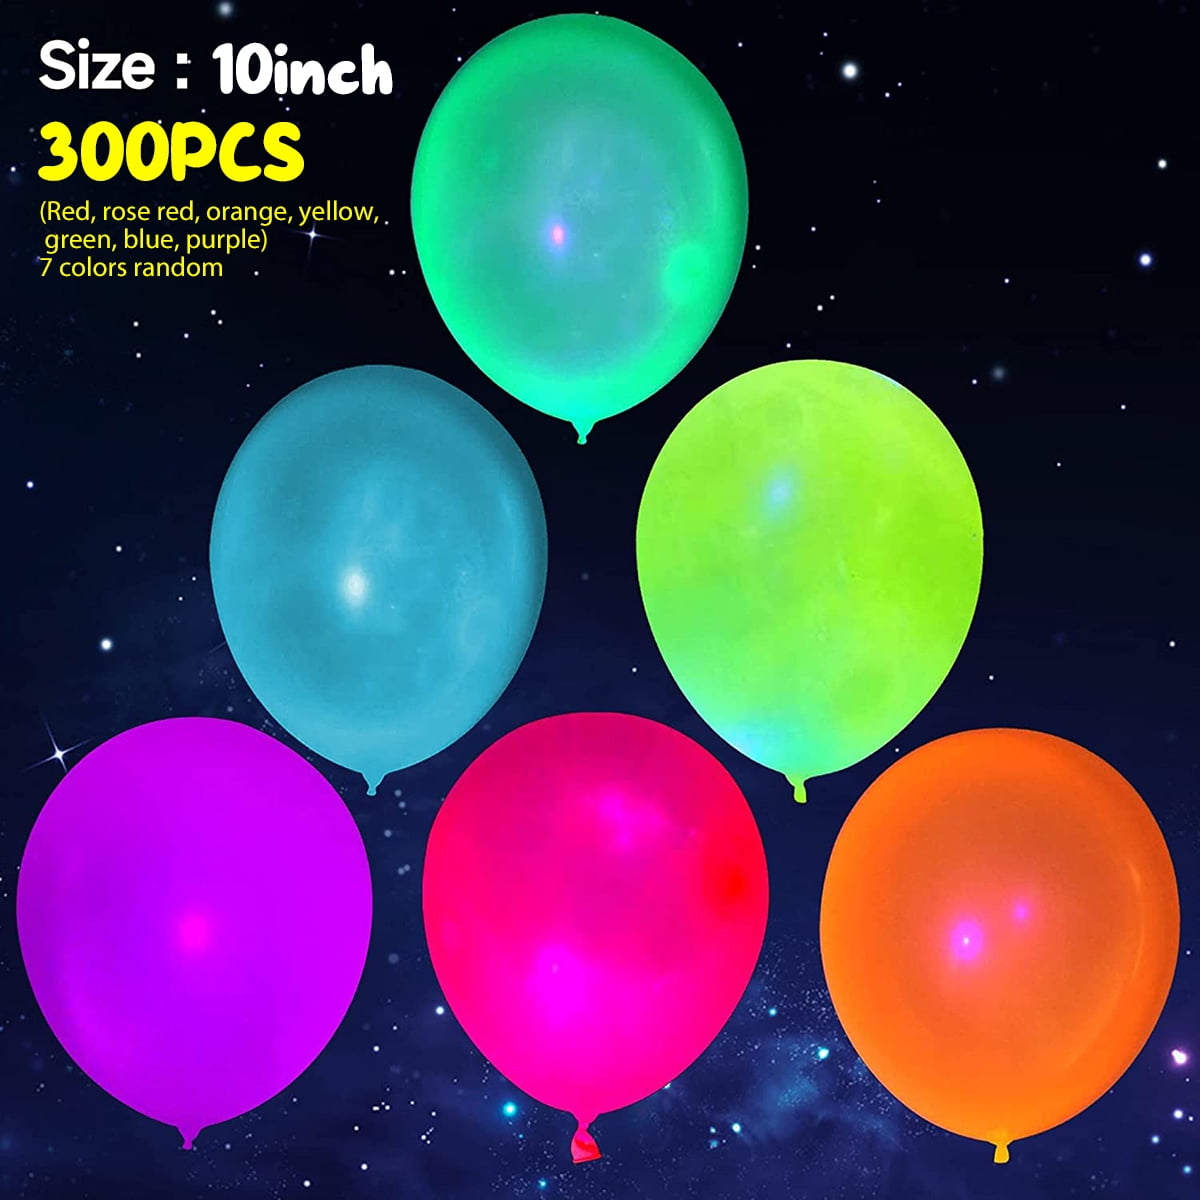 > 10 ballons fluorescents 30cm